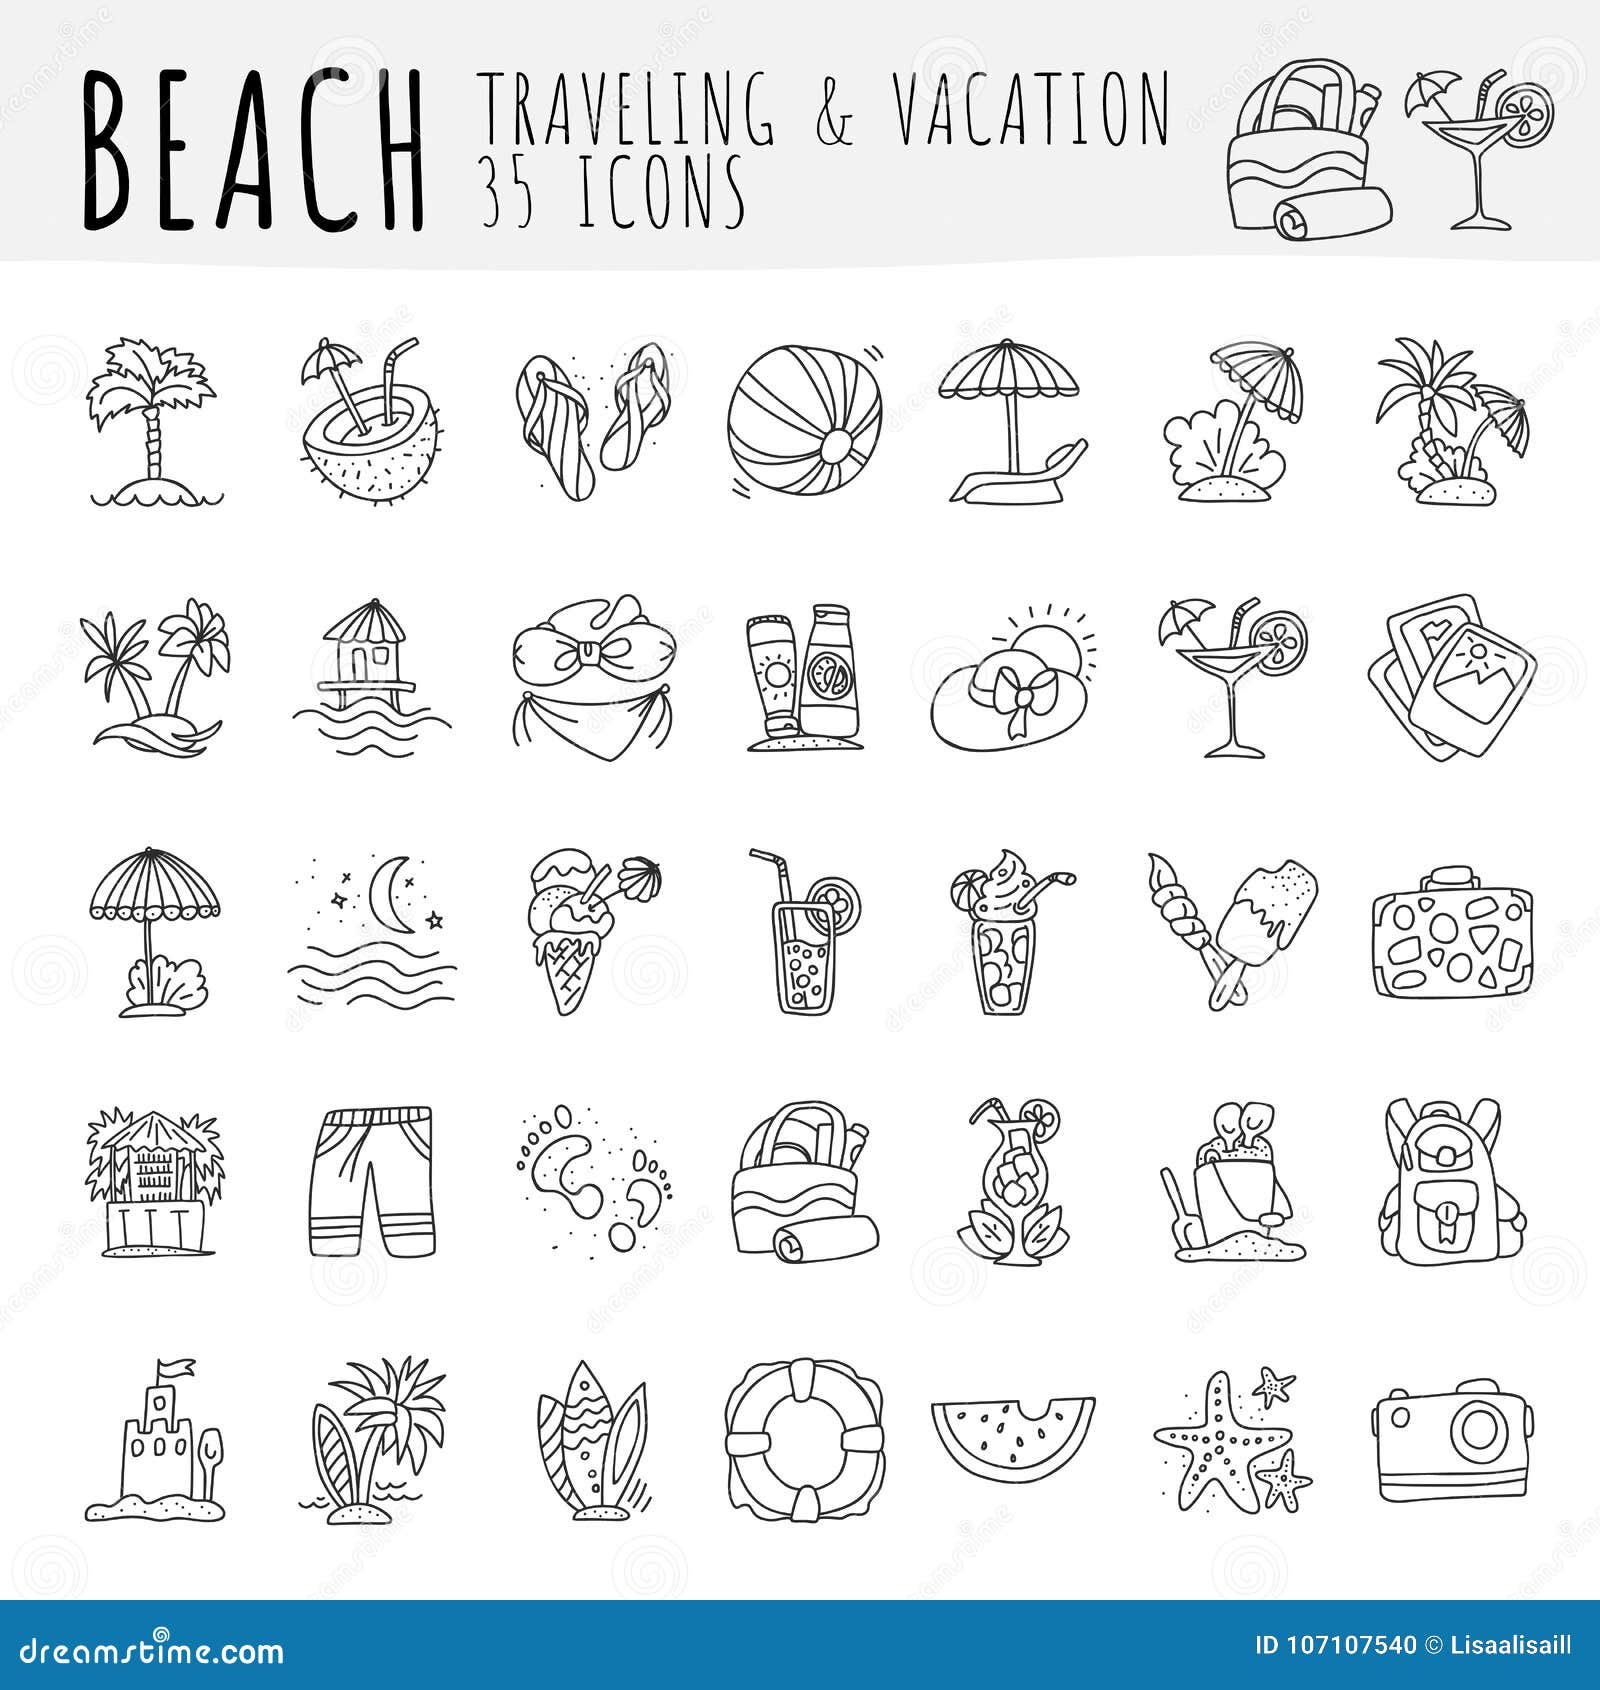 Raccolta tropicale dell'icona della spiaggia di estate Passi le icone di tiraggio circa il viaggio alla spiaggia tropicale ed abbia vacanza Attributi della spiaggia e di estate - coctails, noce di cocco, sabbia e costumi da bagno, ombrelli isolati su fondo bianco